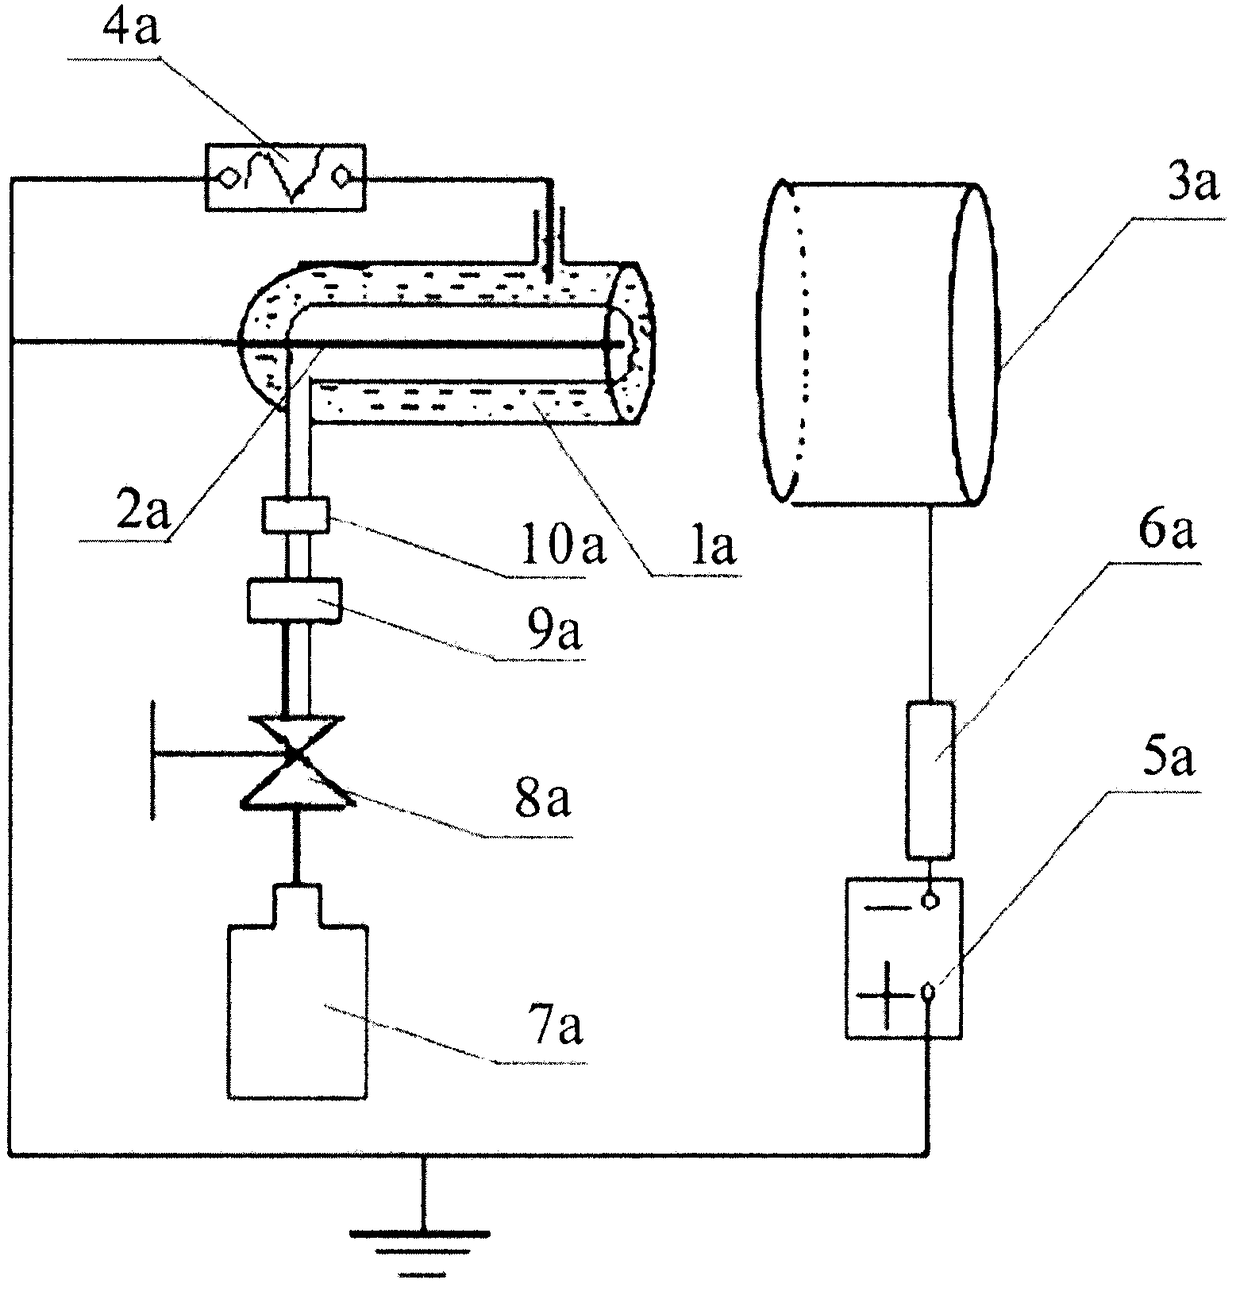 Atmospheric pressure discharging multi-mode conversion apparatus